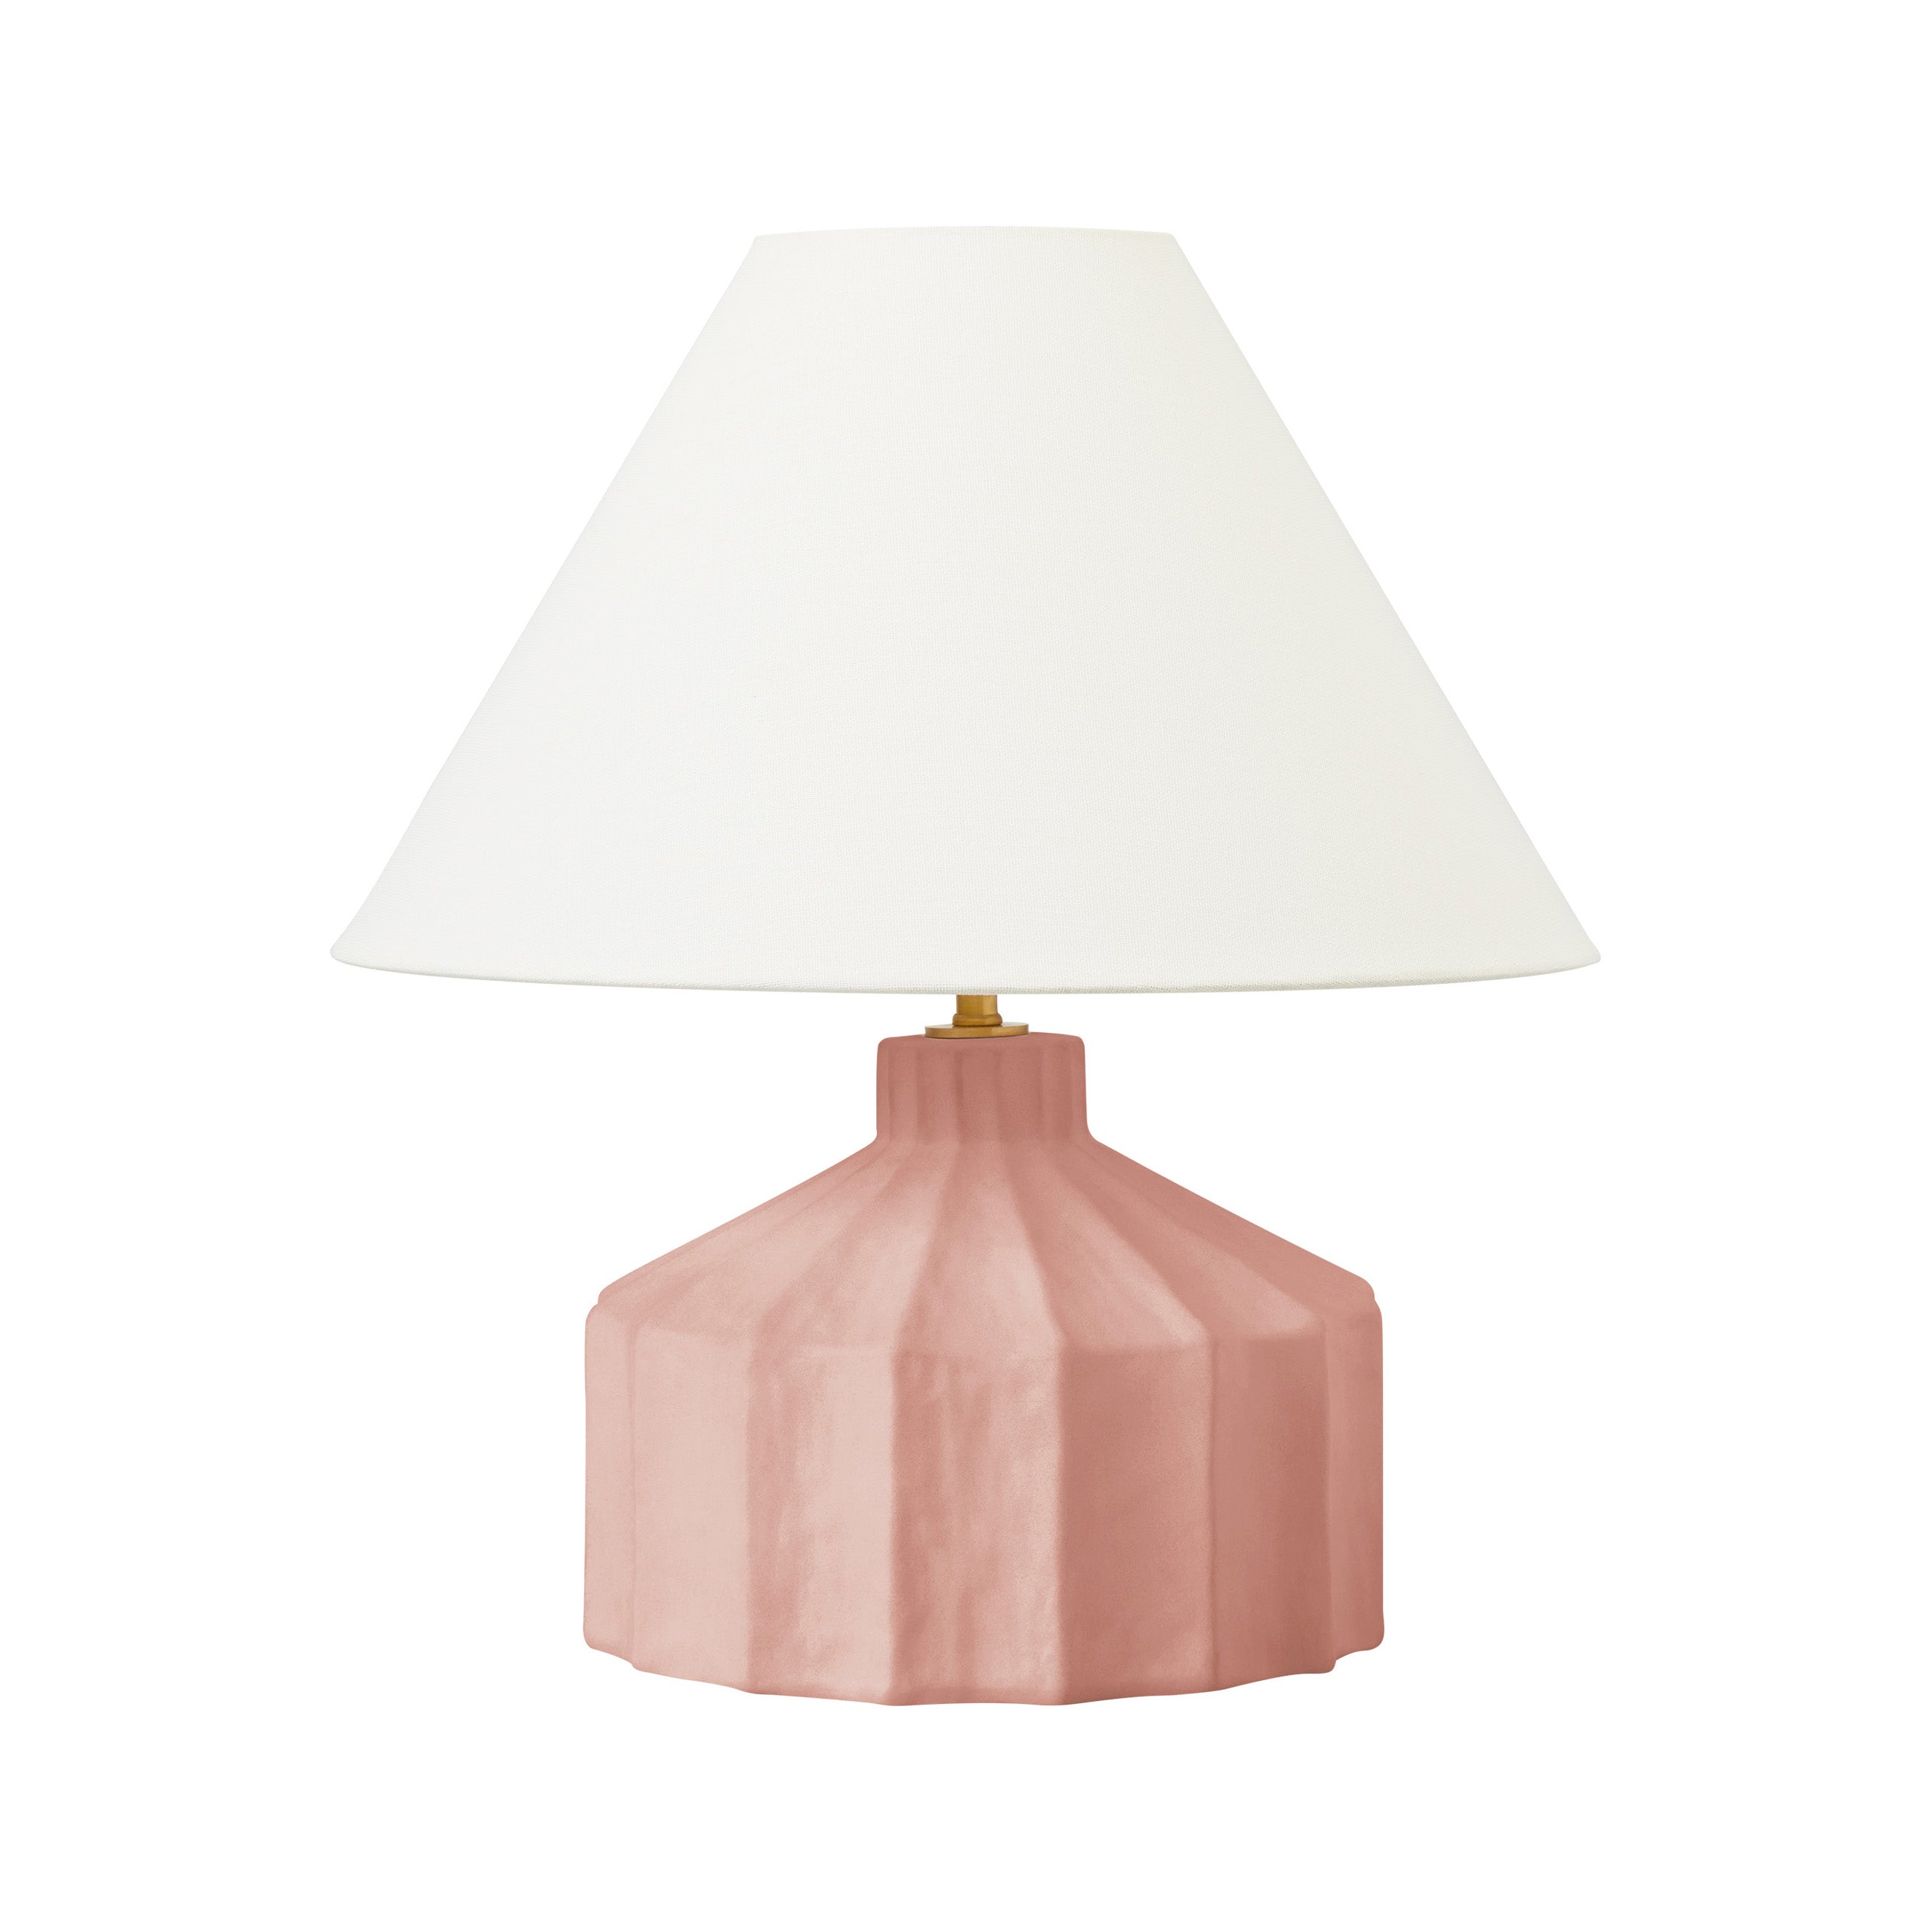 Leesbaarheid Bont Verdampen Visual Comfort & Co Kelly Wearstler Veneto Table Lamp - 2Modern